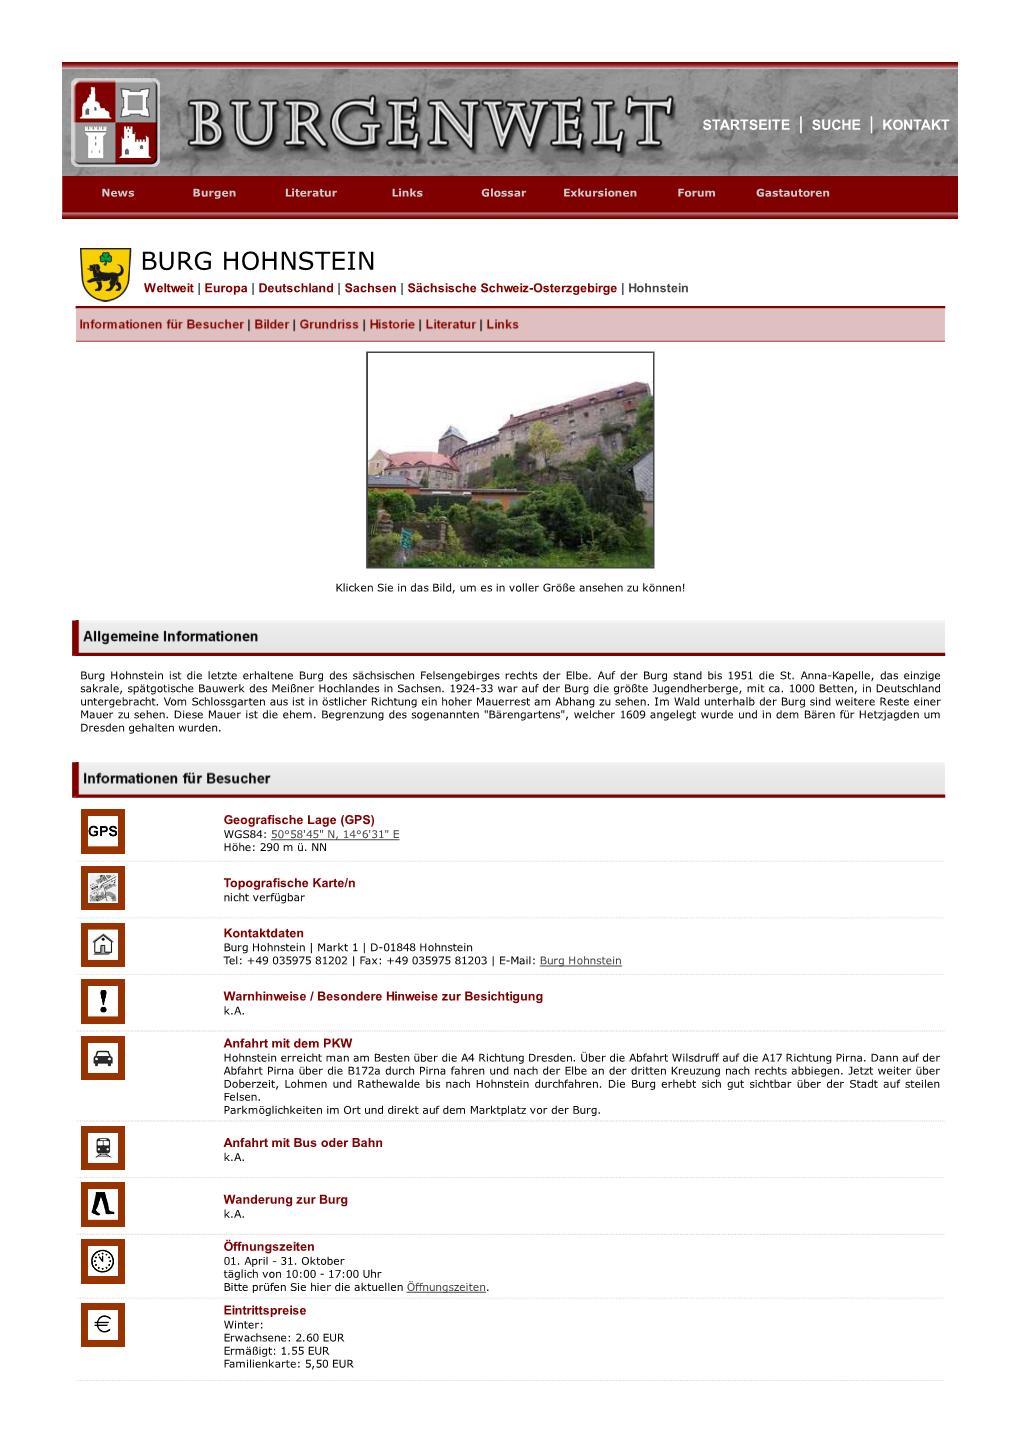 BURG HOHNSTEIN Weltweit | Europa | Deutschland | Sachsen | Sächsische Schweiz-Osterzgebirge | Hohnstein